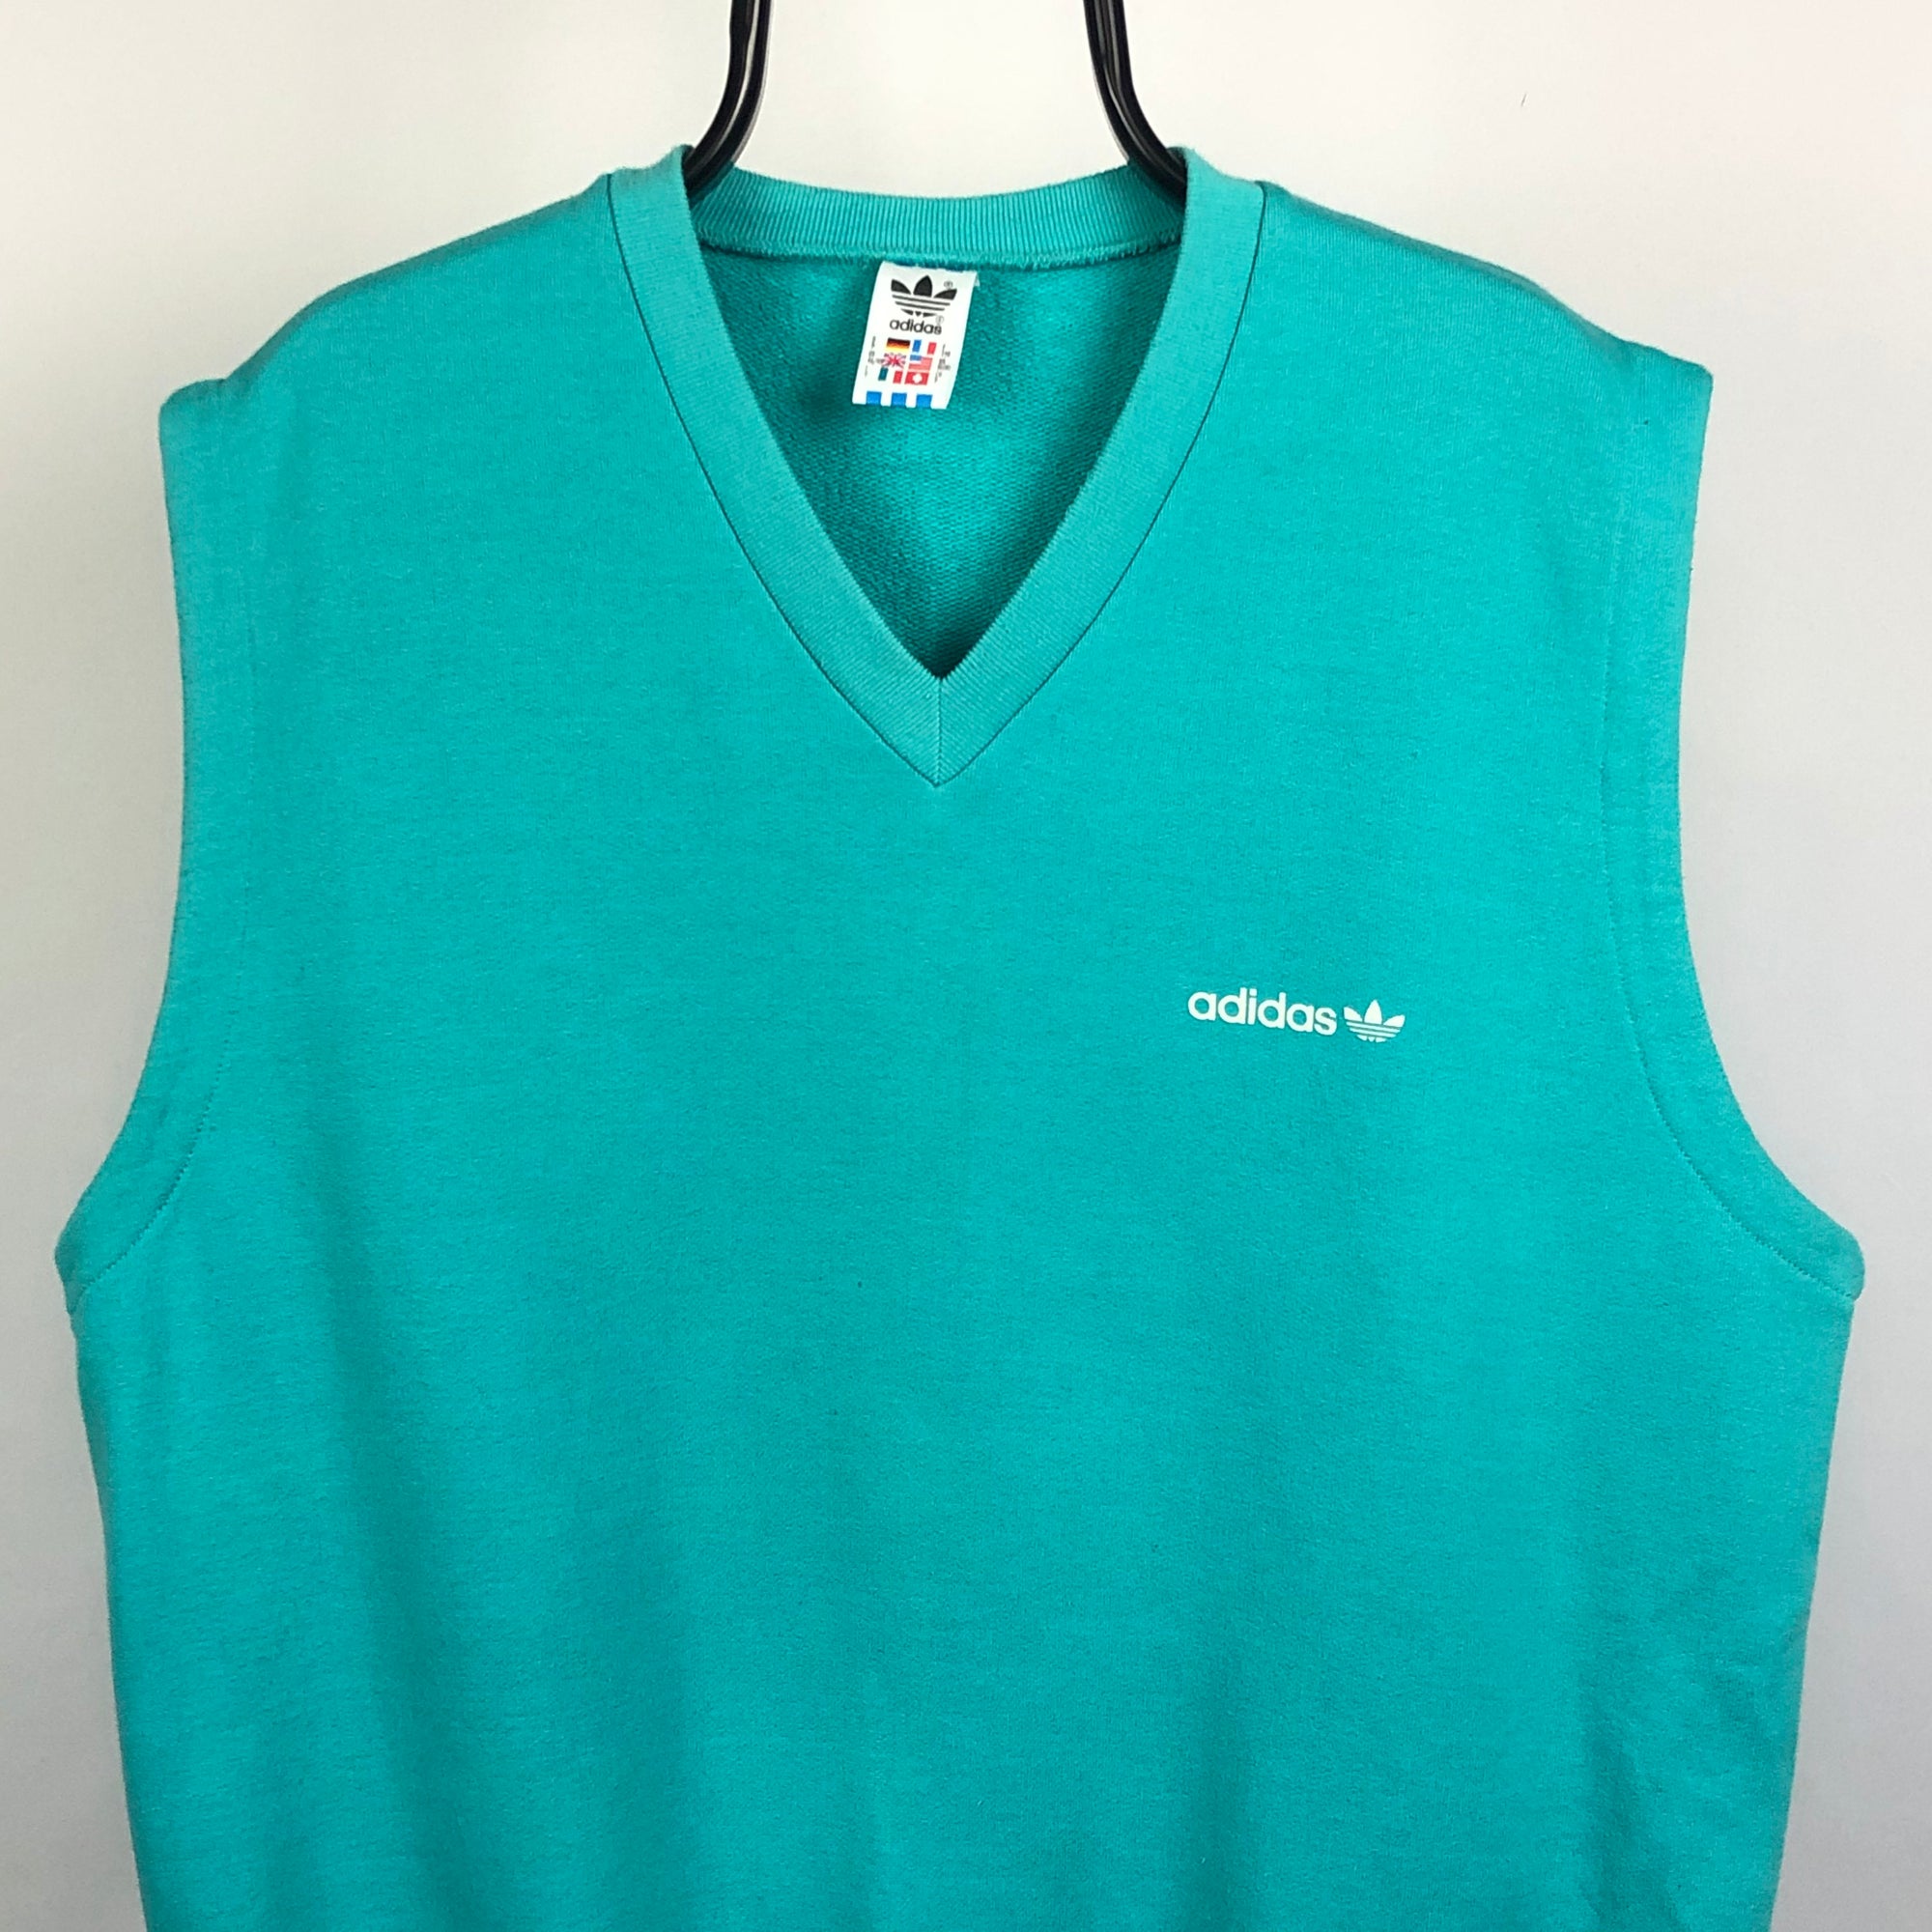 Vintage Adidas Turquoise Sweatshirt Vest - Men's Large/Women's XL